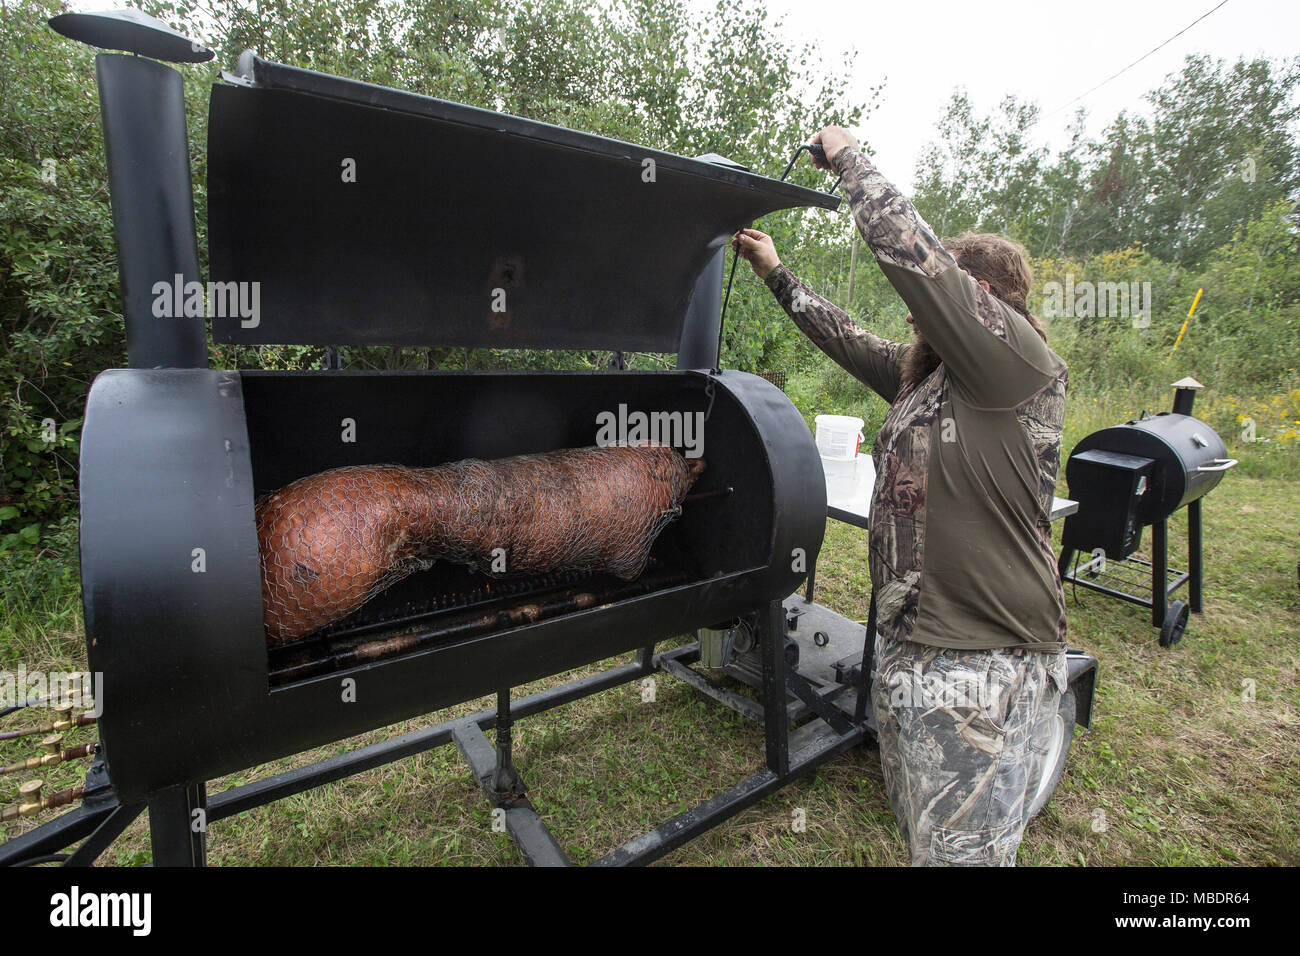 Giant barbecue immagini e fotografie stock ad alta risoluzione - Alamy